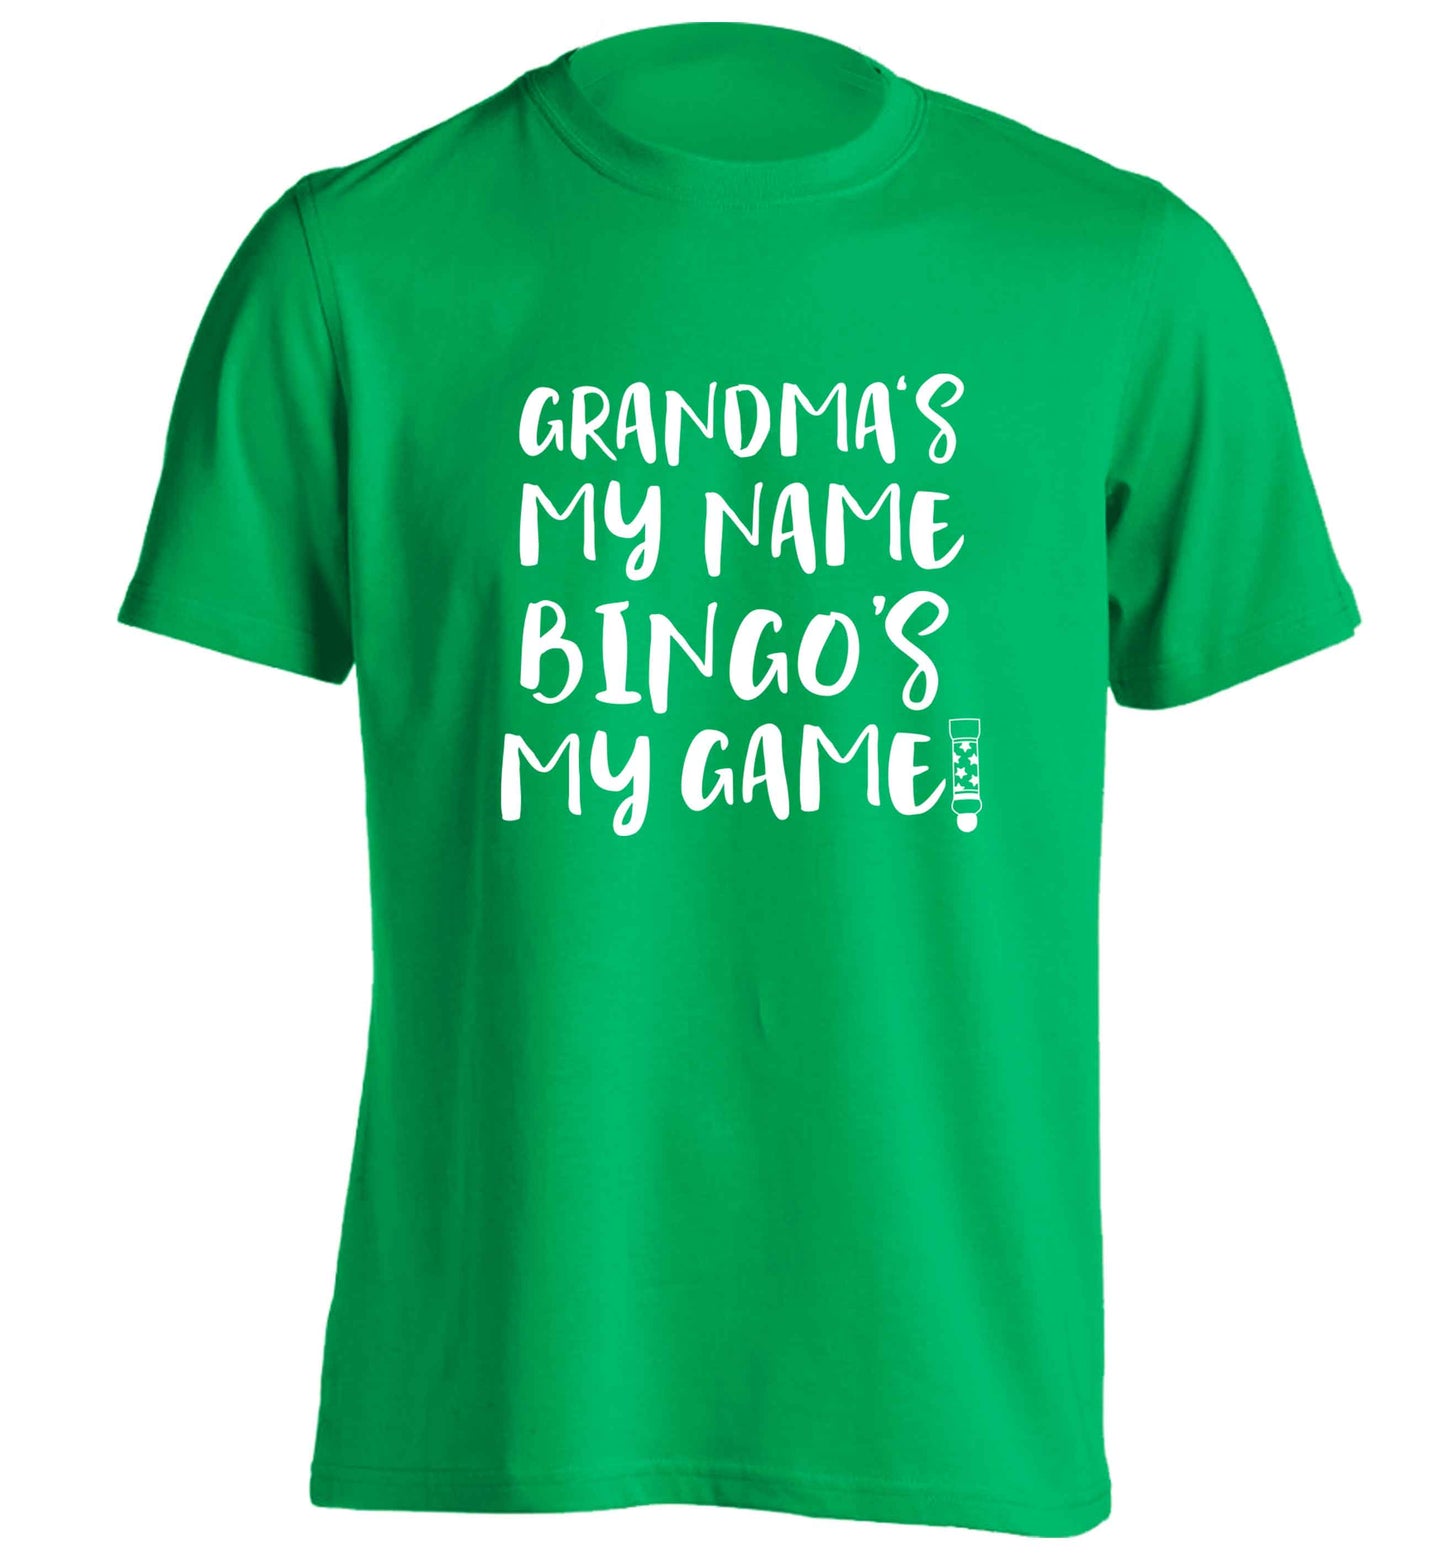 Grandma's my name bingo's my game! adults unisex green Tshirt 2XL